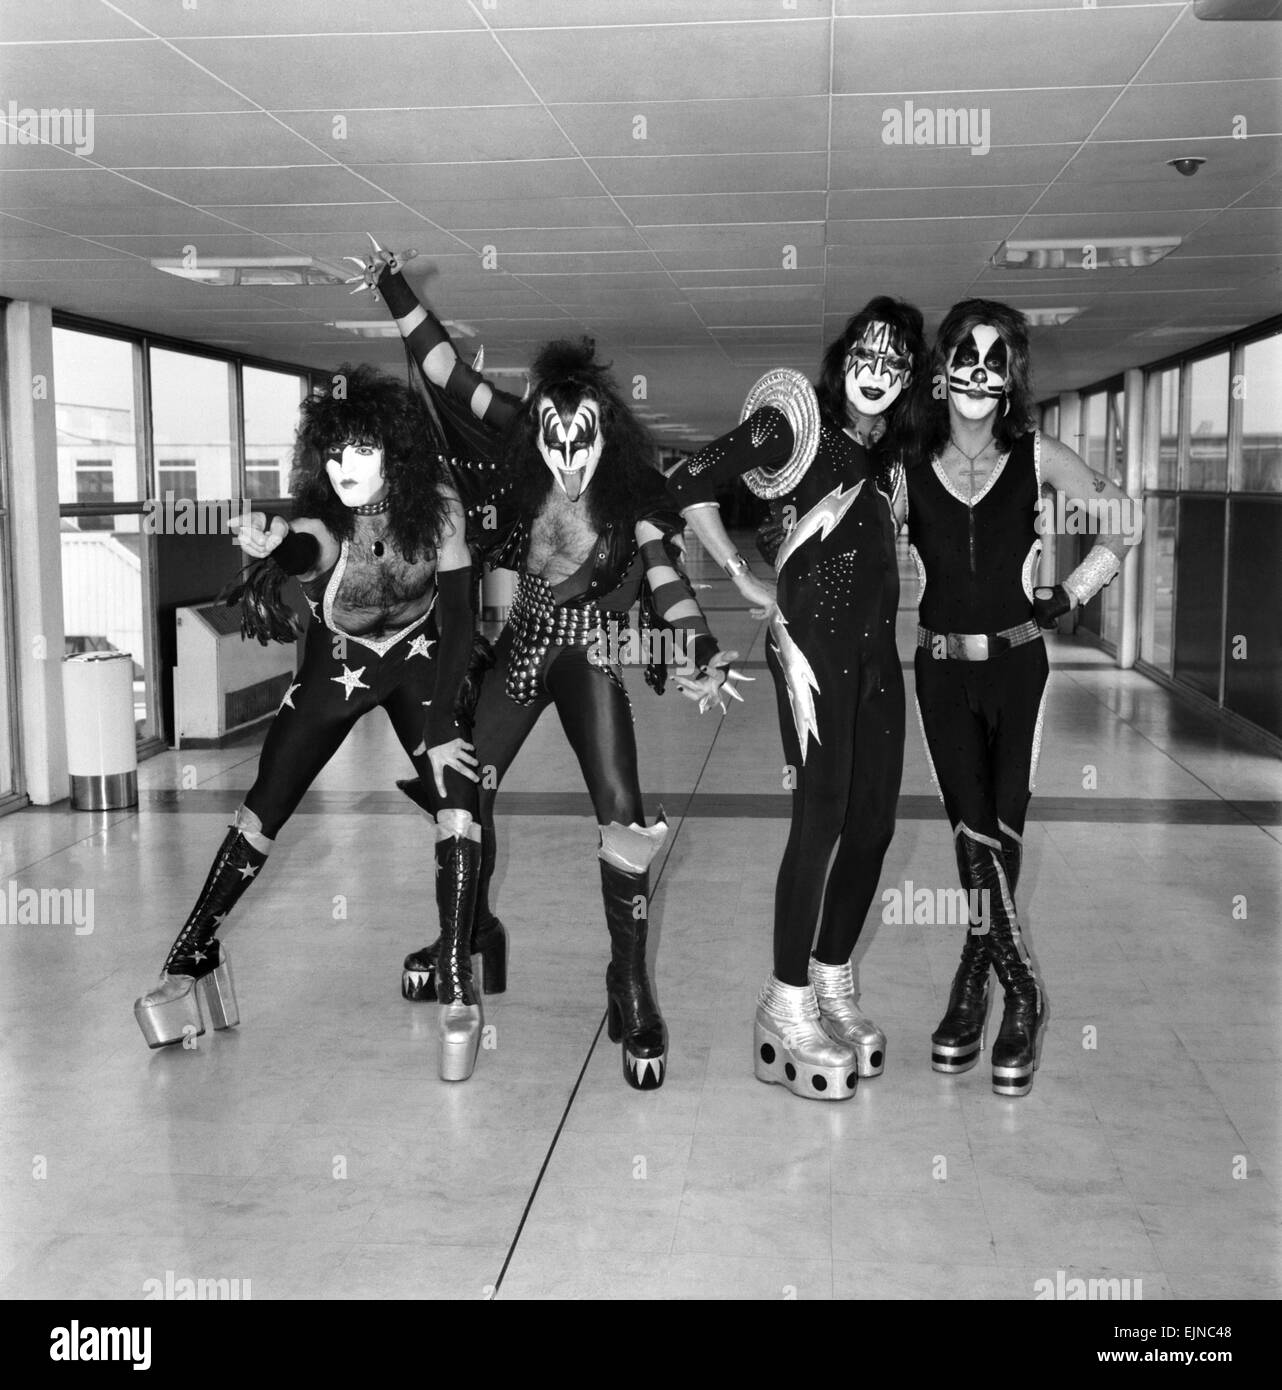 Kiss, la spettacolare e colorata rock americano gruppo arrivati in Gran Bretagna oggi per il loro debutto europeo spettacoli. Il gruppo potrà indossare la loro pesantemente costellata nero e argento con costumi appositamente scolpito scarponi; verranno visualizzati in nero, bianco e silver e make-up - proprio come le forze del male incarnato. Nella foto all'arrivo all'aeroporto di Heathrow sono membri del gruppo da sinistra a destra: l-r Paul Stanley e Gene Simmons, Ace Frehley e Peter Criss. Il 10 maggio 1976. Foto Stock